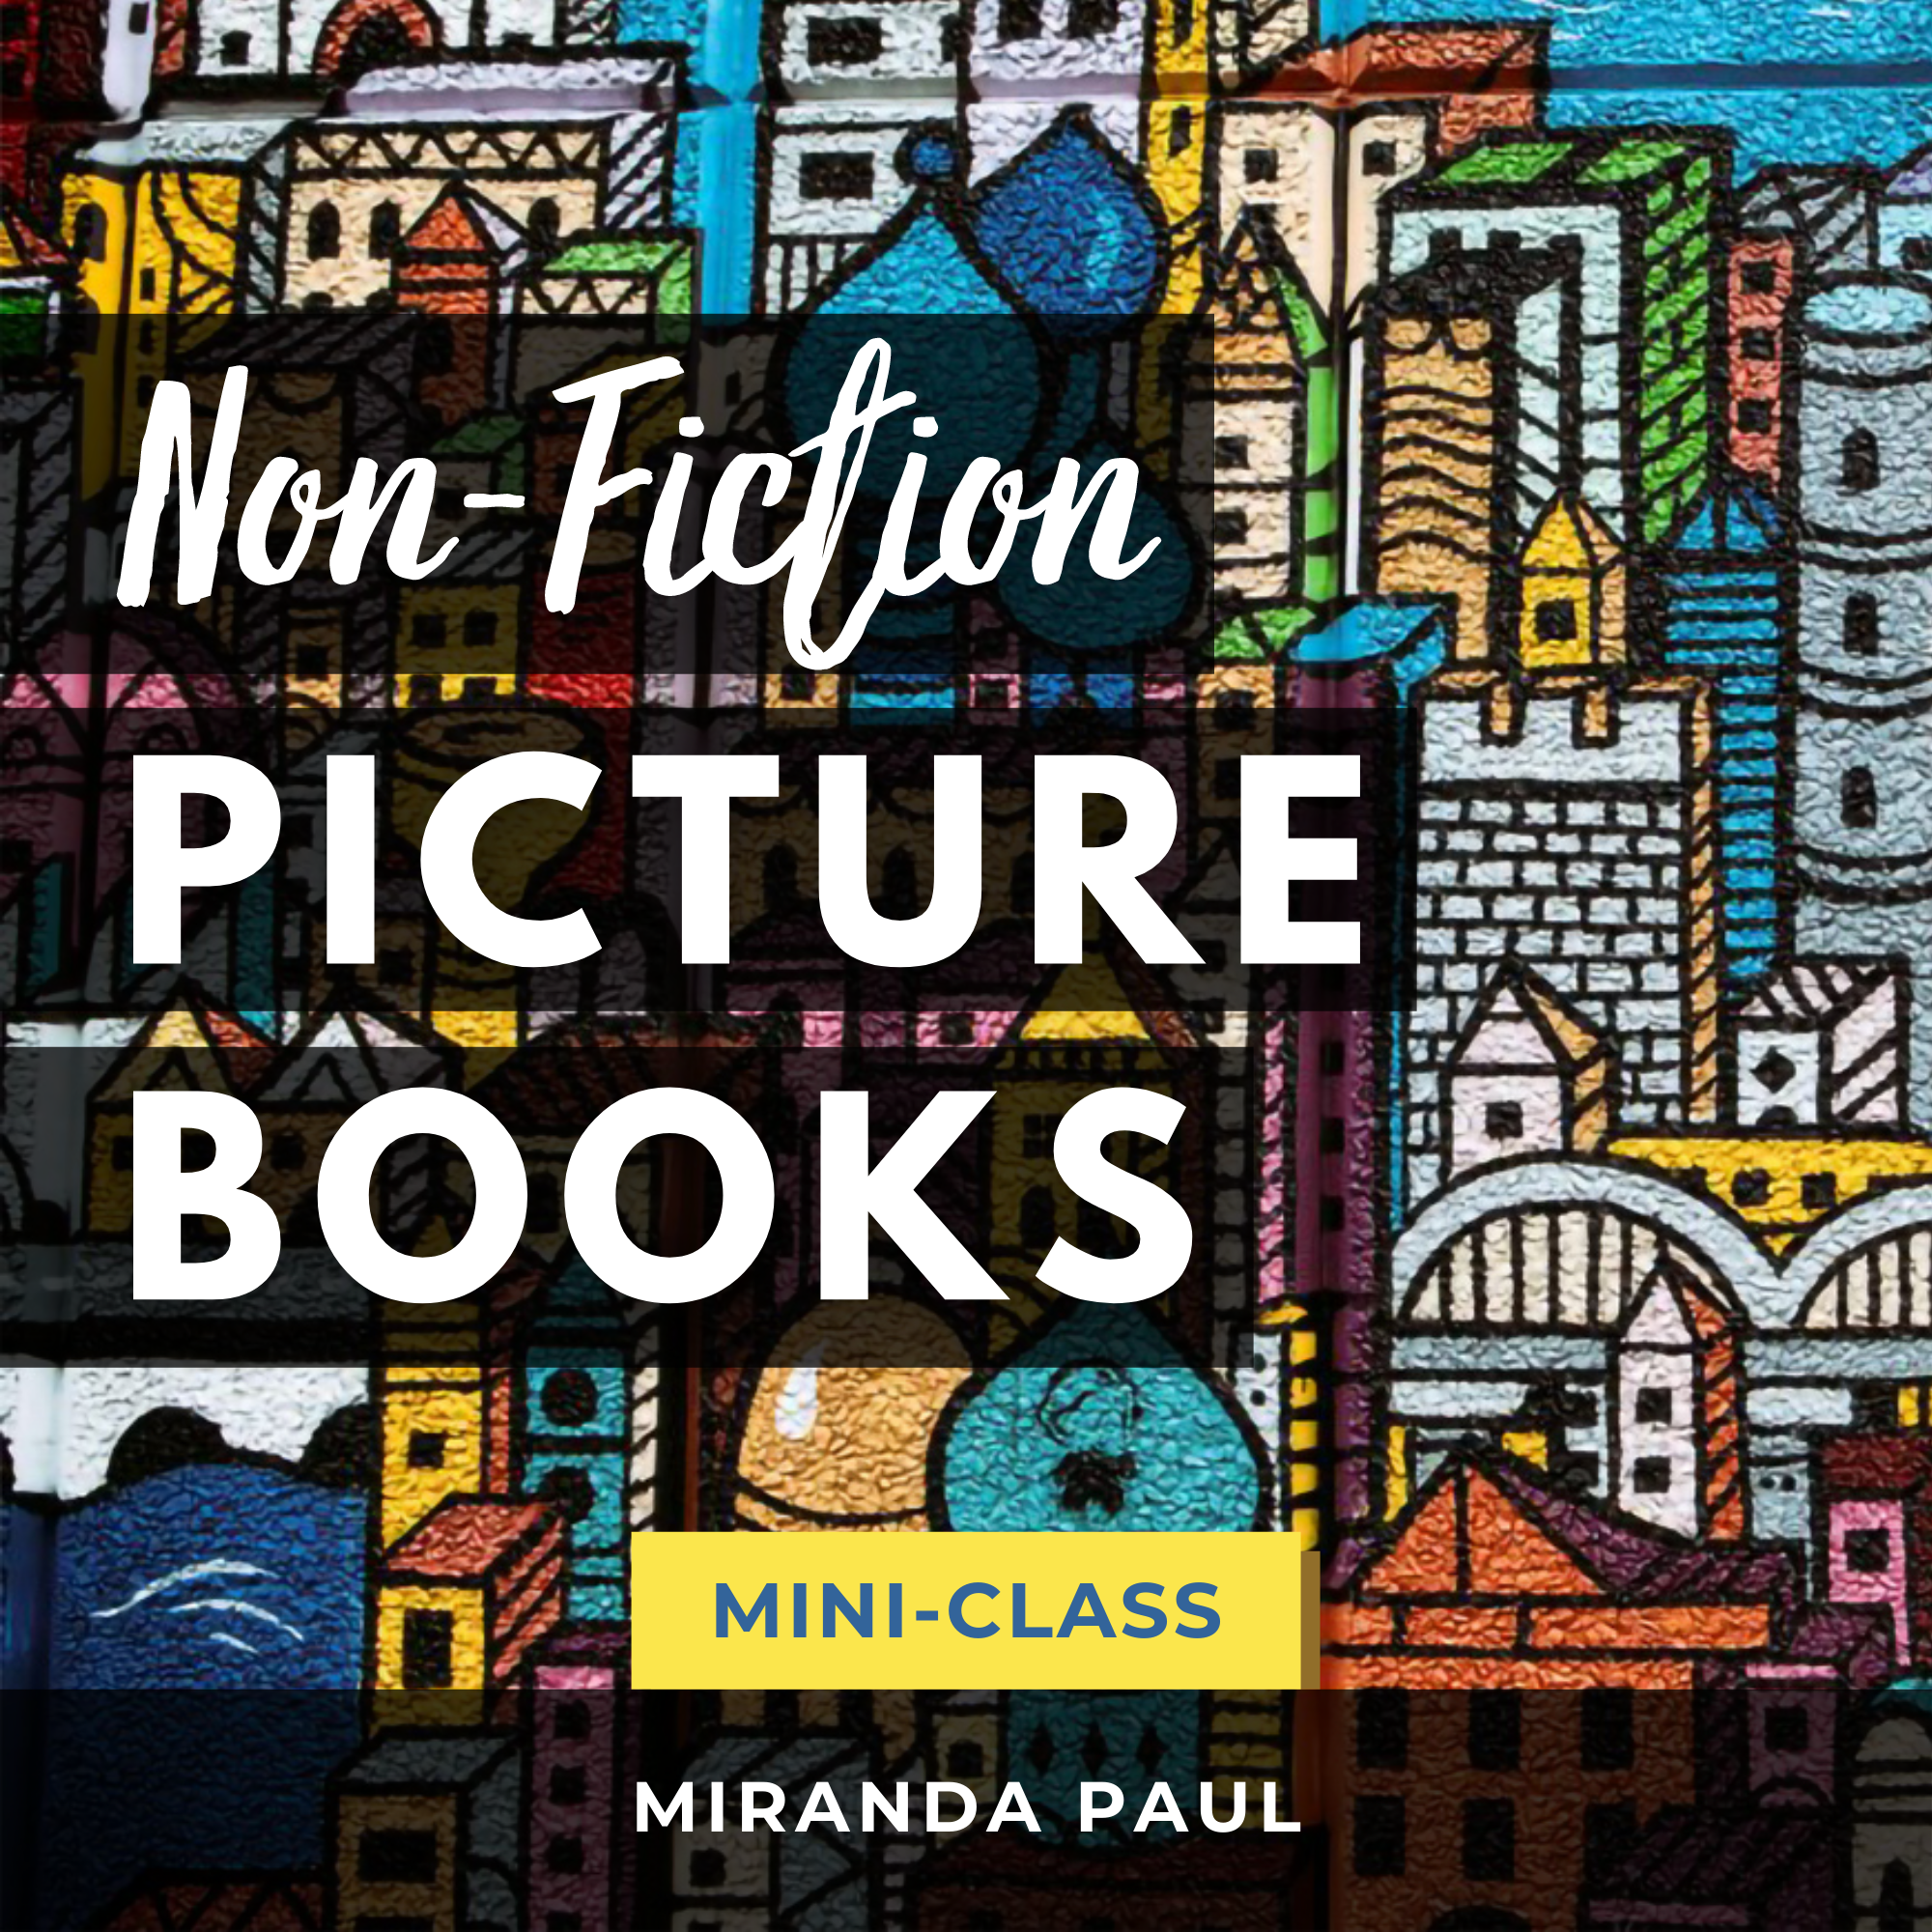 Non-Fiction Picture Books